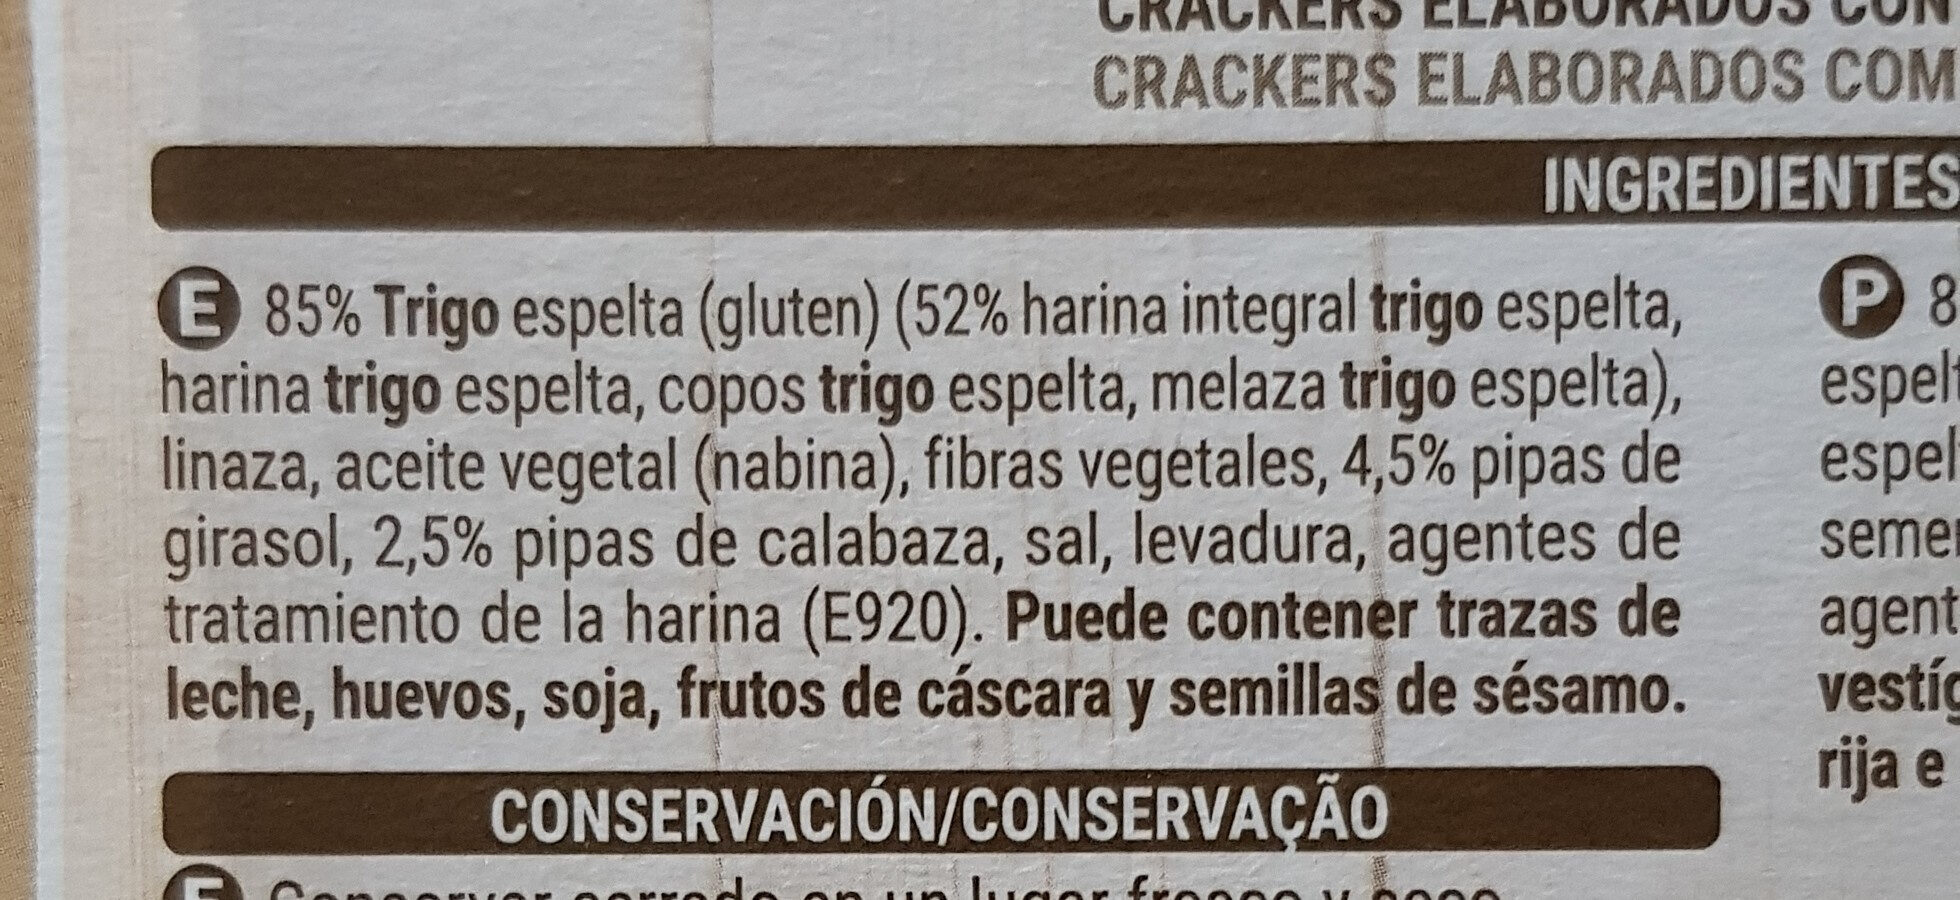 Crackers espelta - Ingredients - es